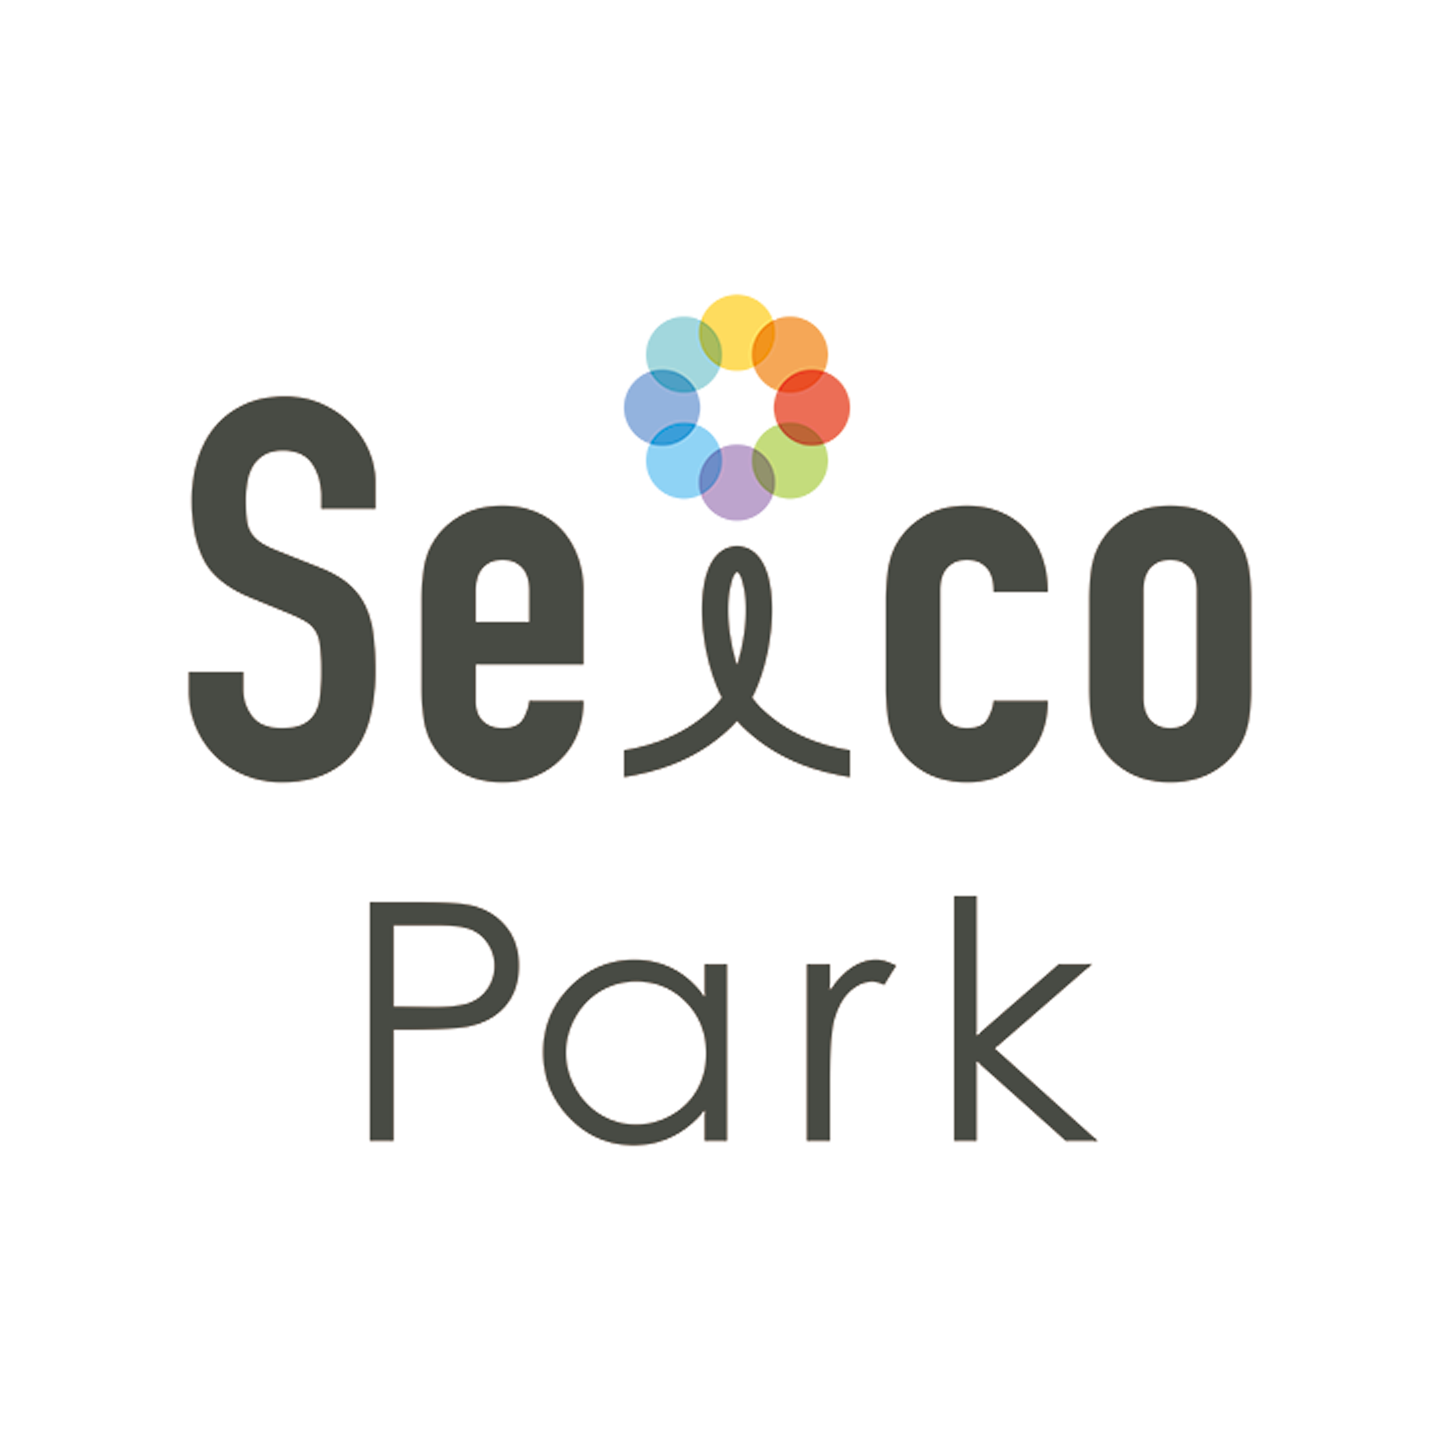 Seico Park